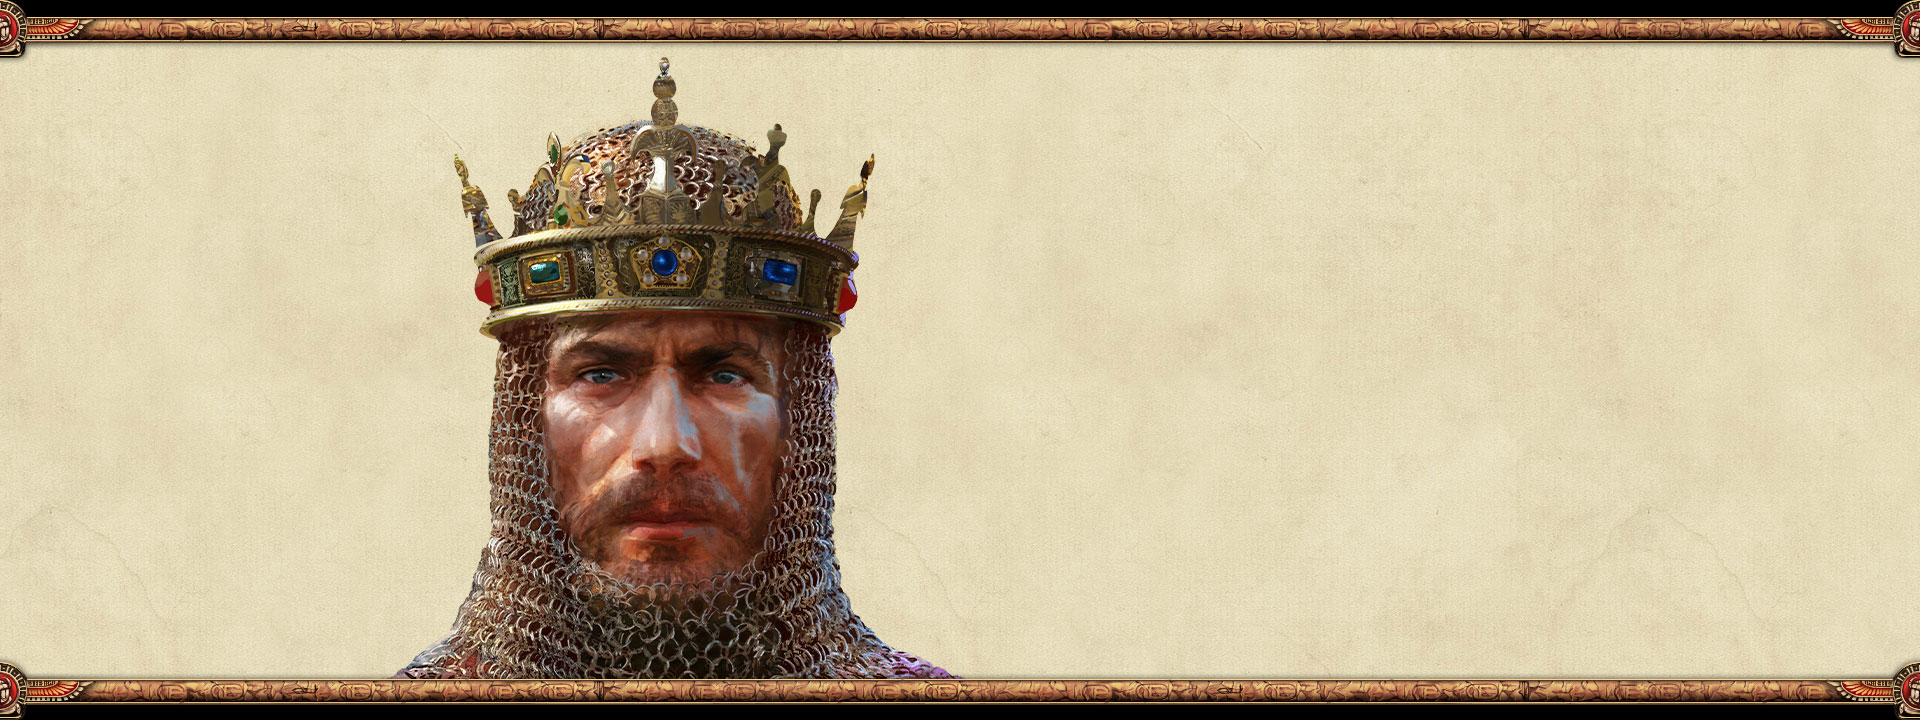 Egy birodalom uralkodója, aki páncélinget és koronát visel